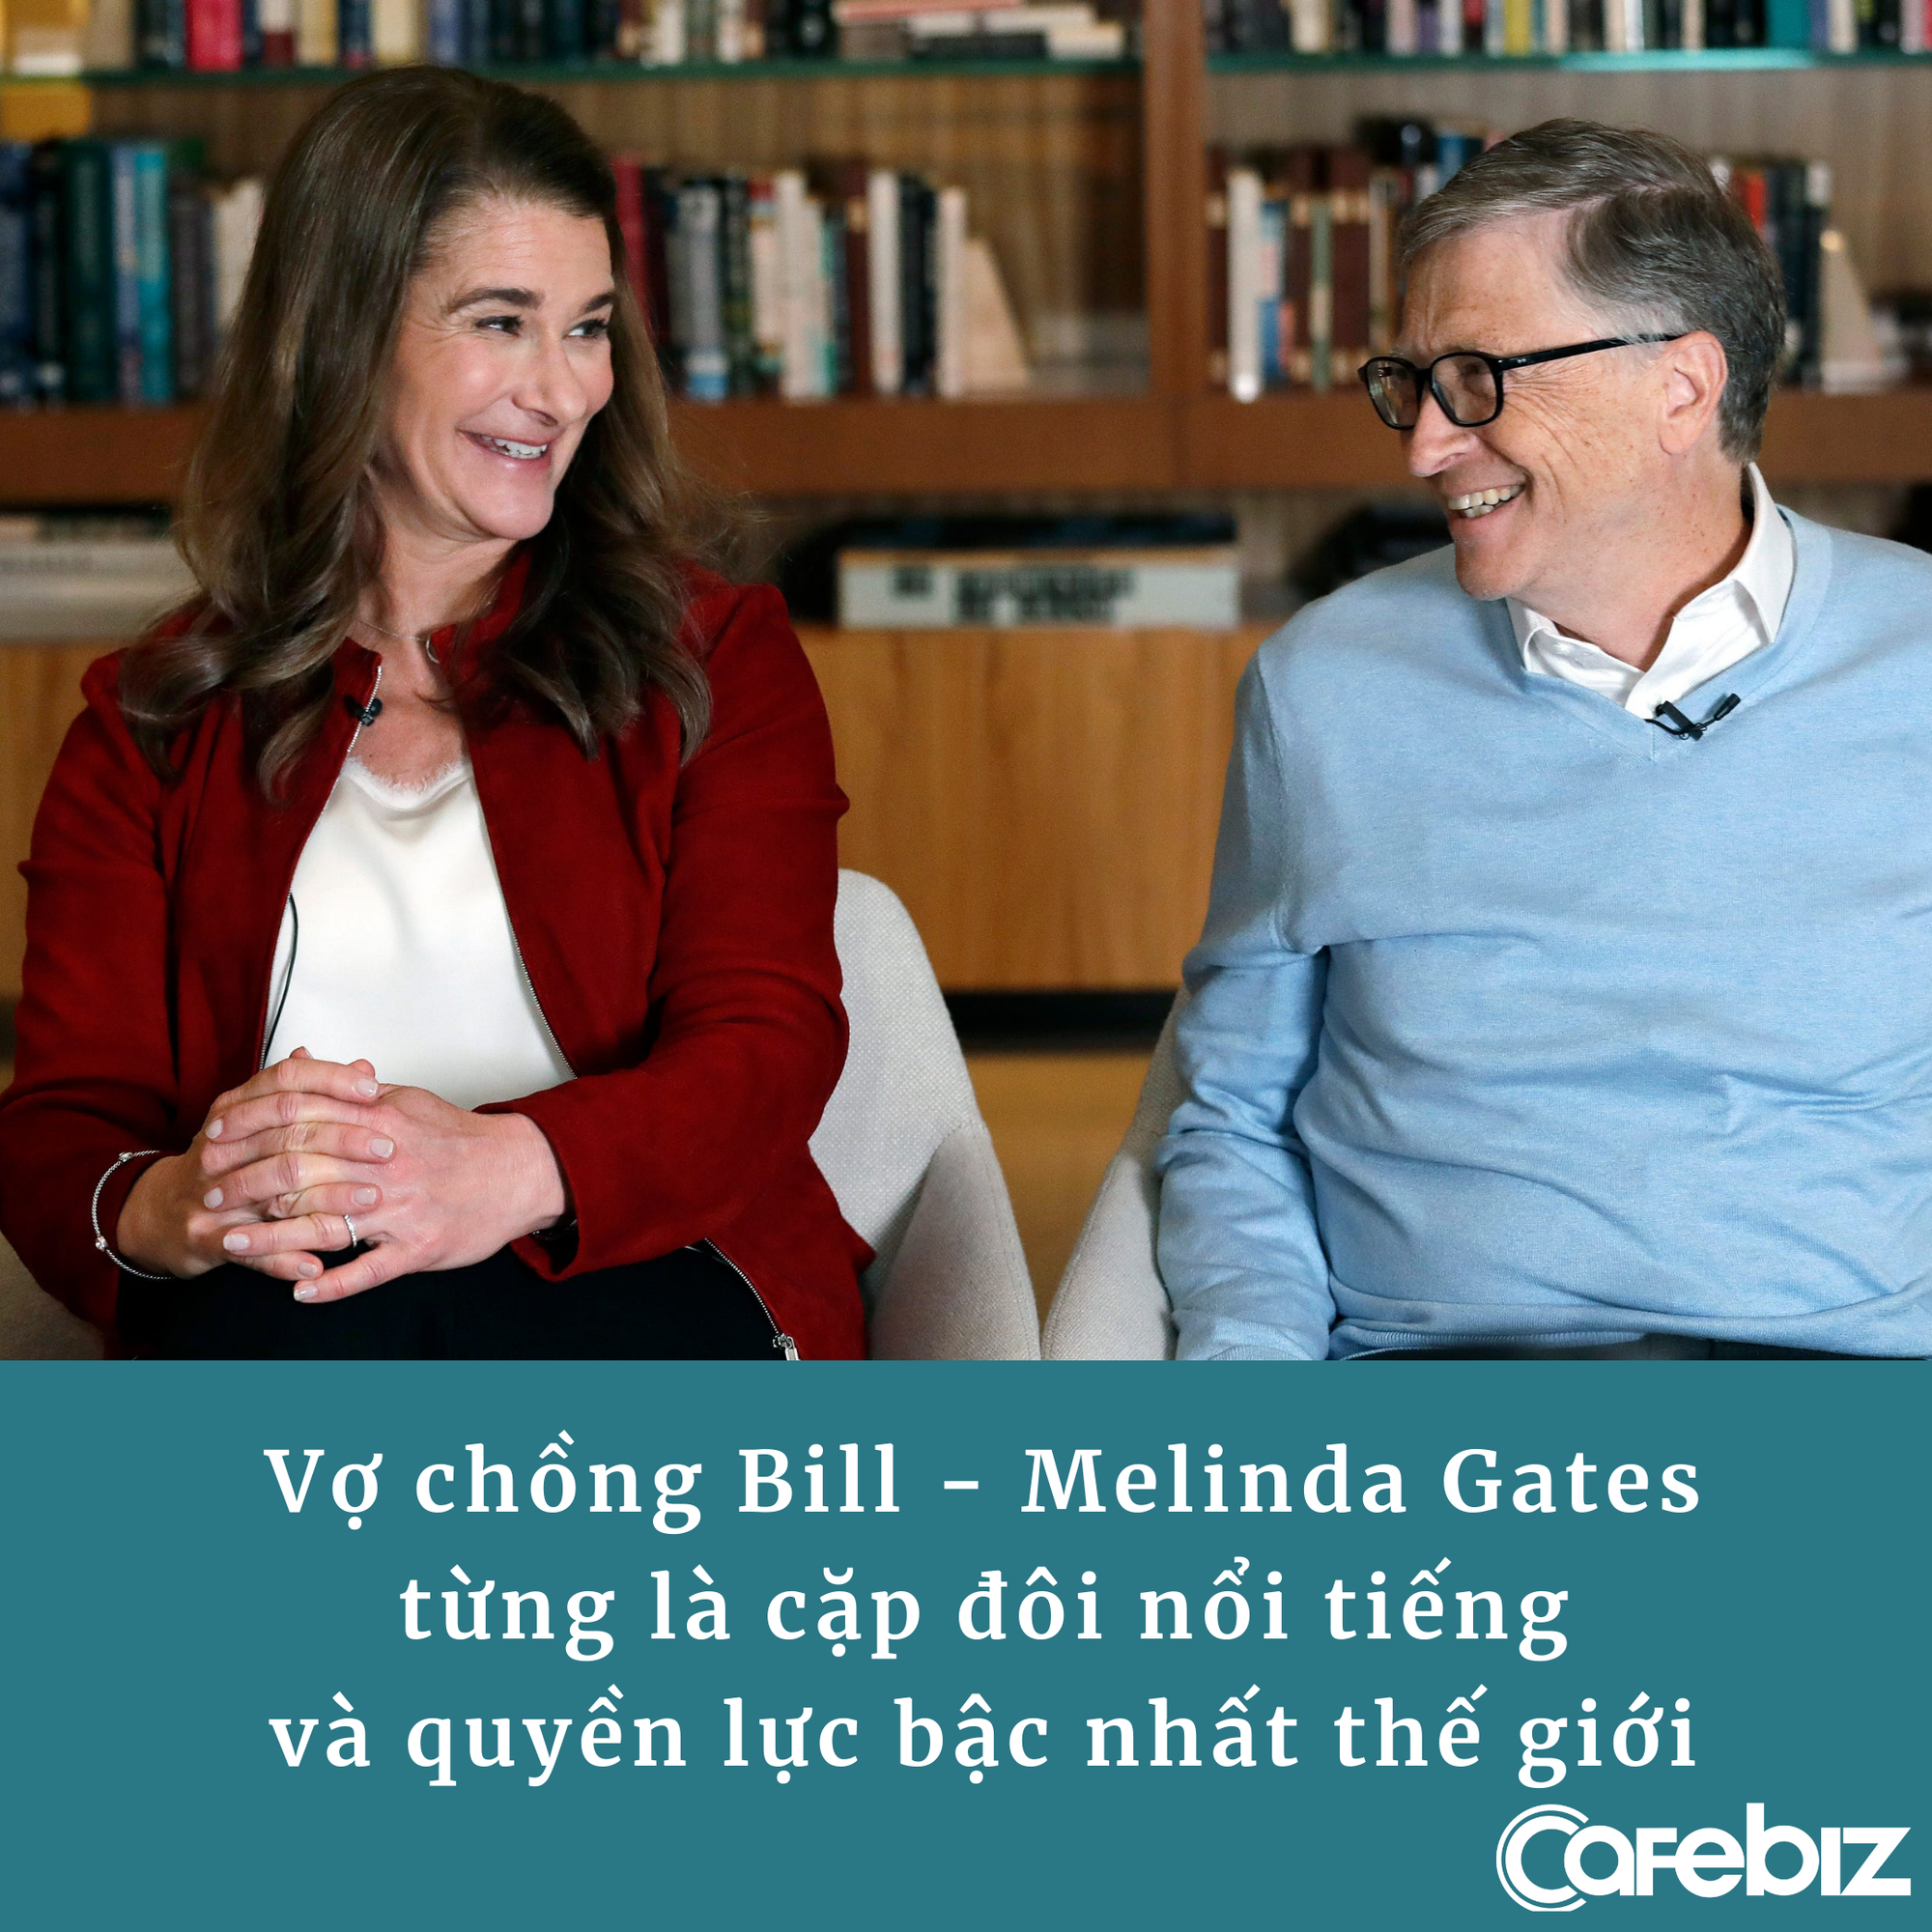 Bill Gates chính thức ly hôn, vợ cũ không ‘đòi’ đổi họ, số phận khối tài sản trăm tỷ ‘đô’ vẫn chưa xác định - Ảnh 1.